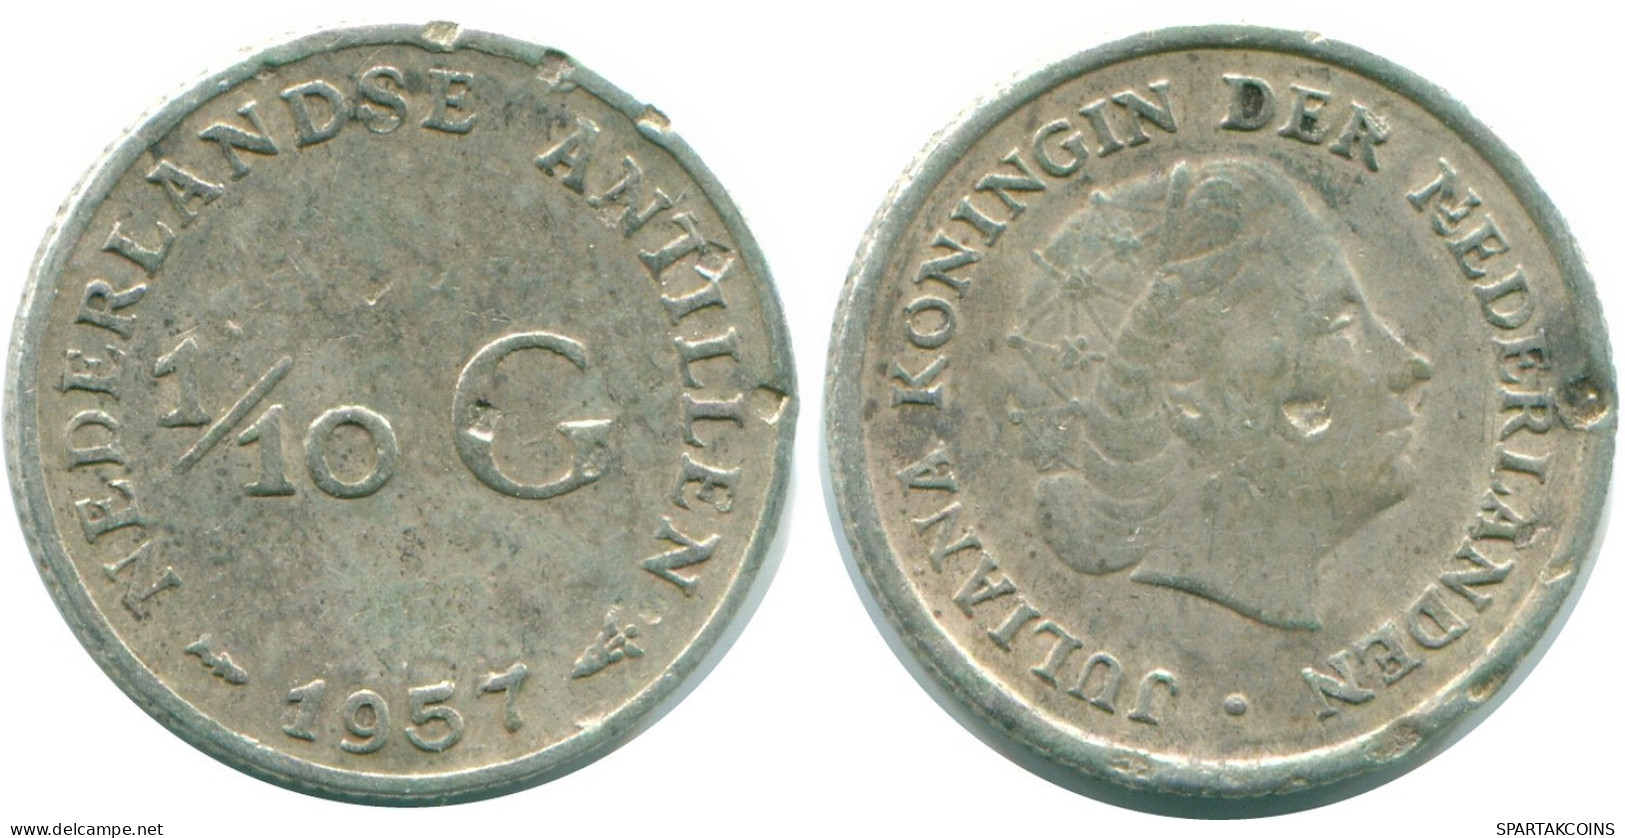 1/10 GULDEN 1957 NIEDERLÄNDISCHE ANTILLEN SILBER Koloniale Münze #NL12184.3.D.A - Nederlandse Antillen